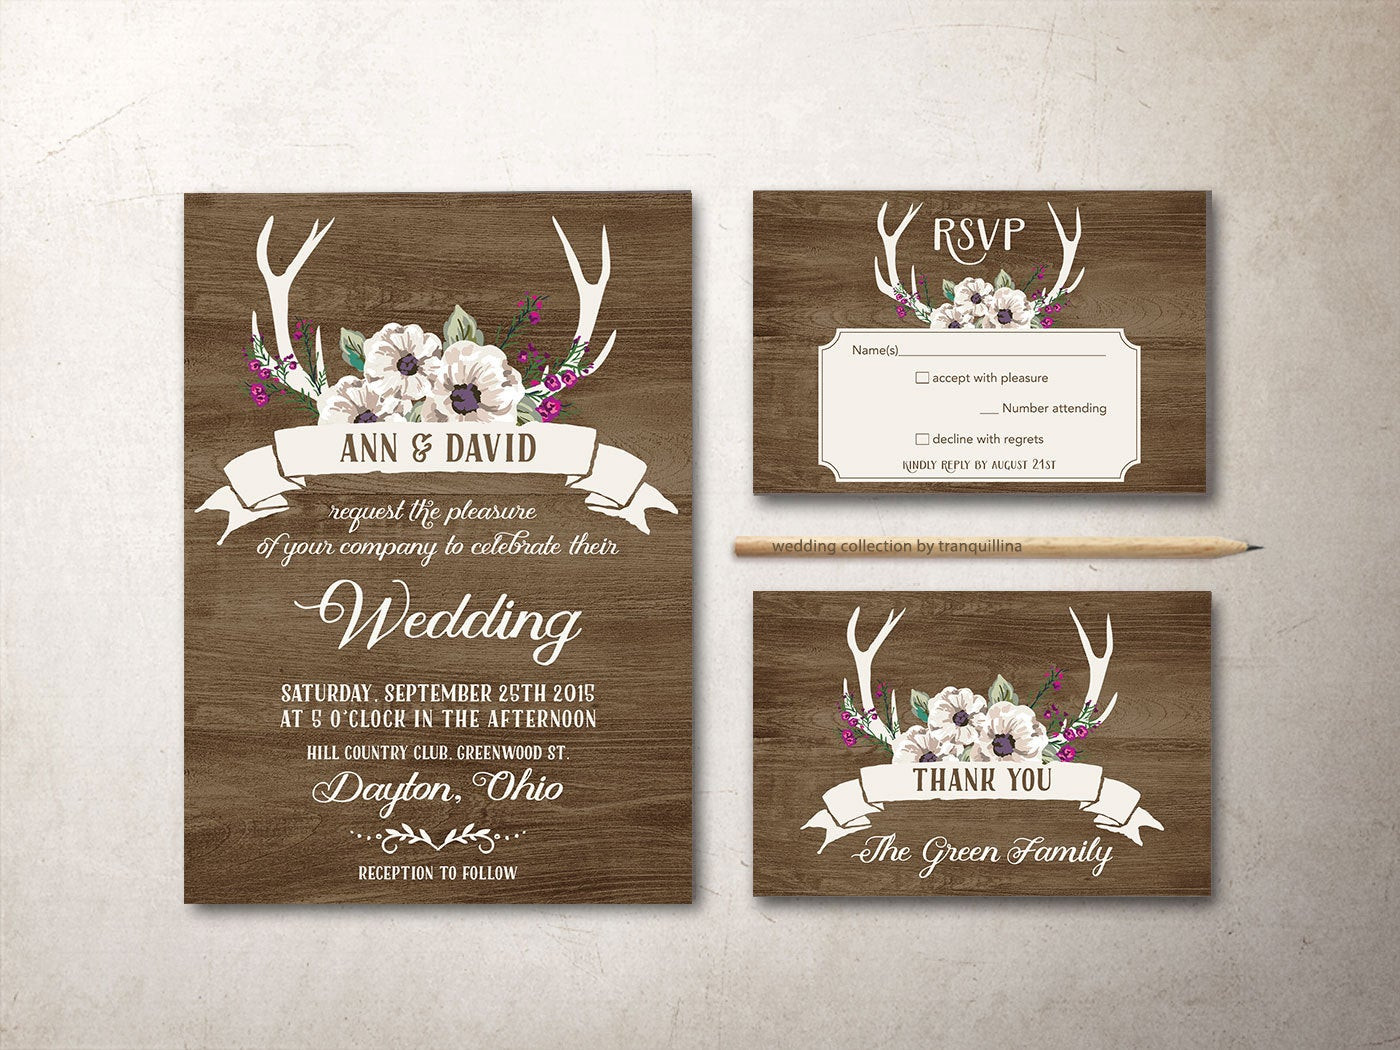 Printable Rustic Wedding Invitations
 Deer Antlers Wedding Invitation Printable Rustic Wedding